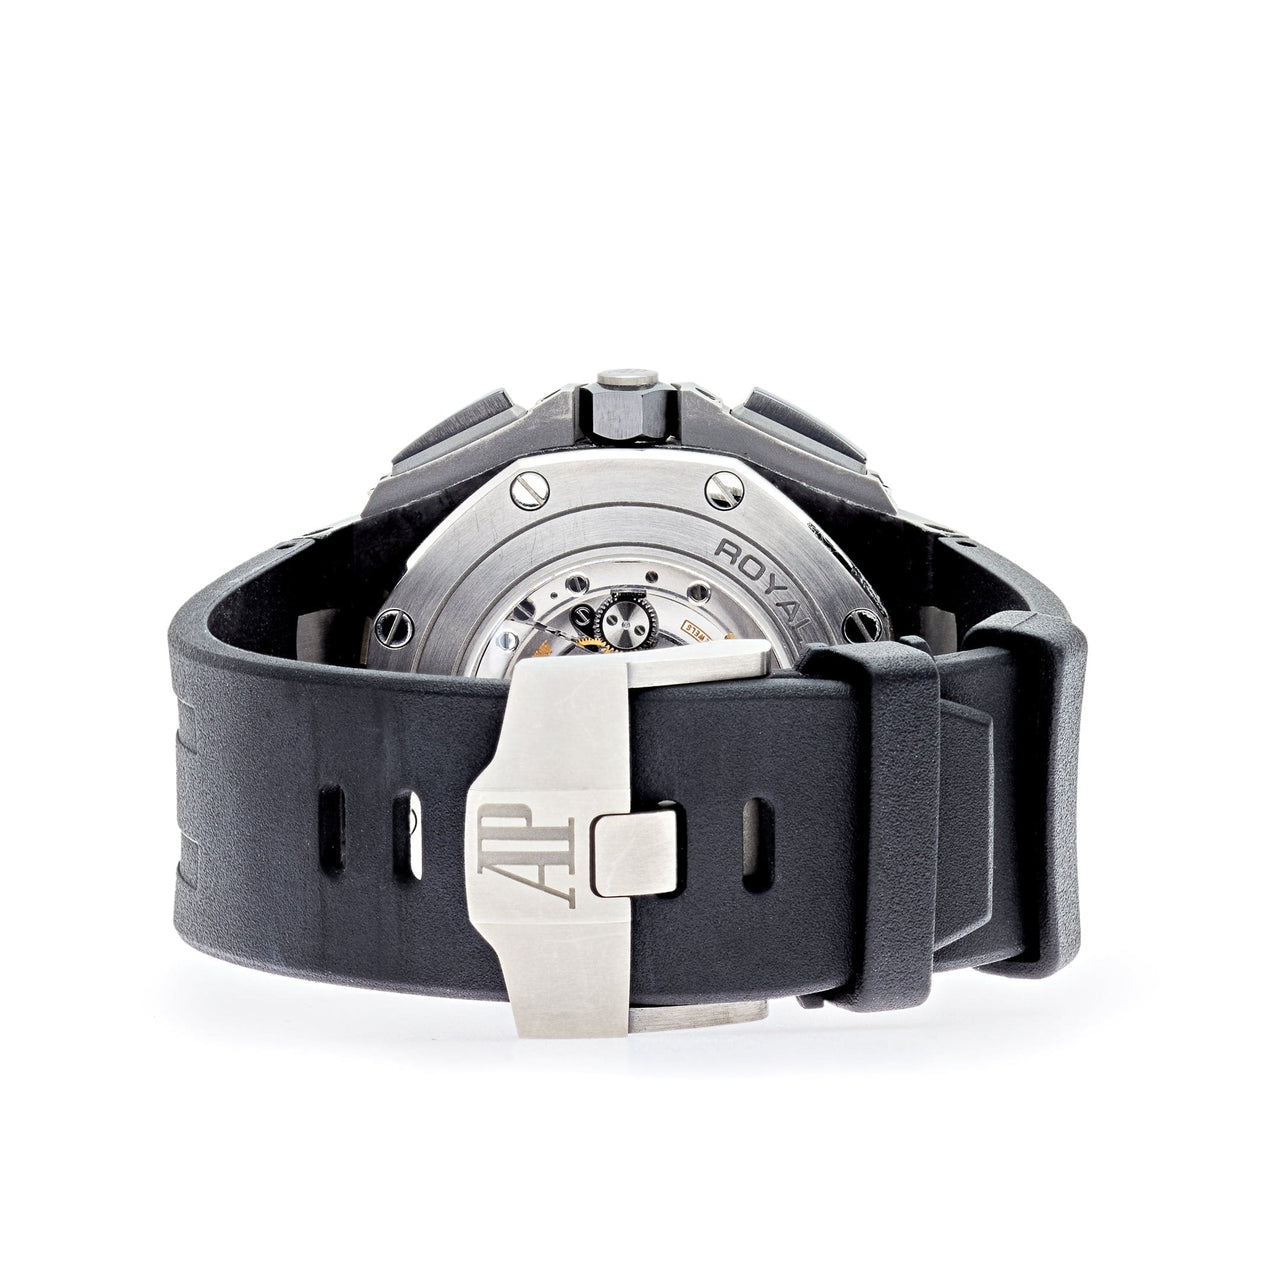 Luxury Watch Audemars Piguet Royal Oak Offshore Chronograph 44mm Black Carbon 26400AU.OO.A002CA.01 Wrist Aficionado